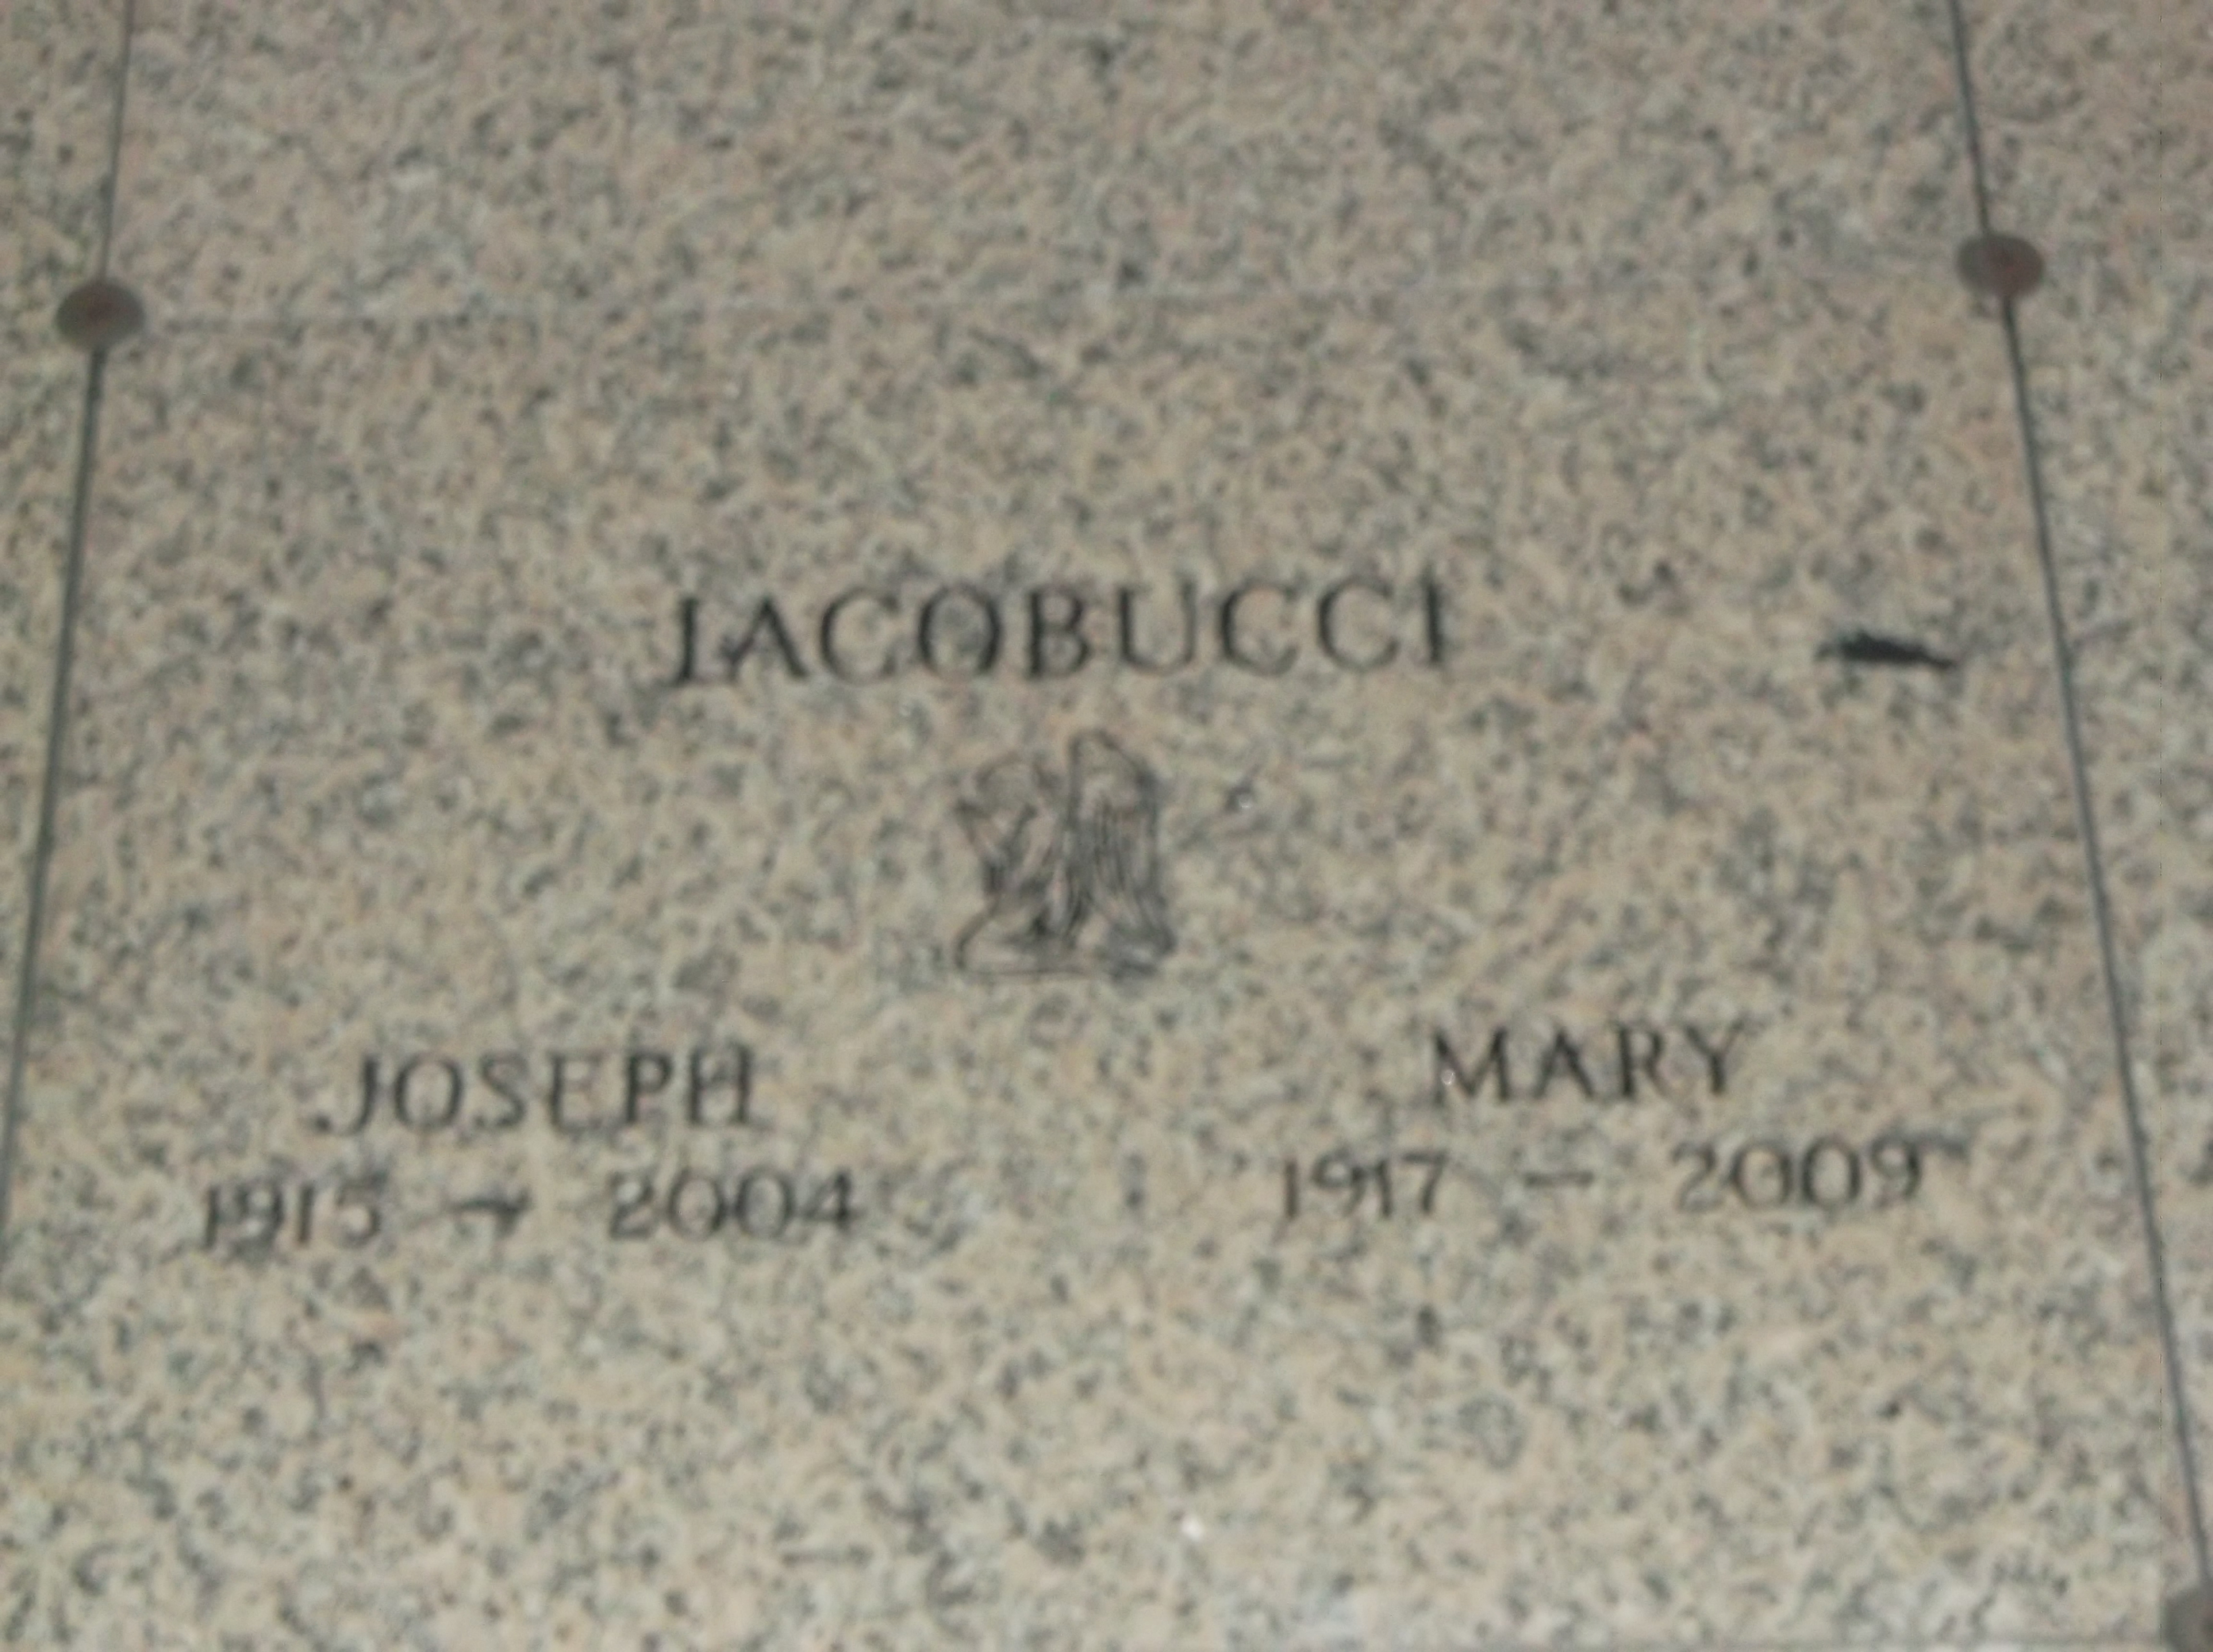 Mary Jacobucci